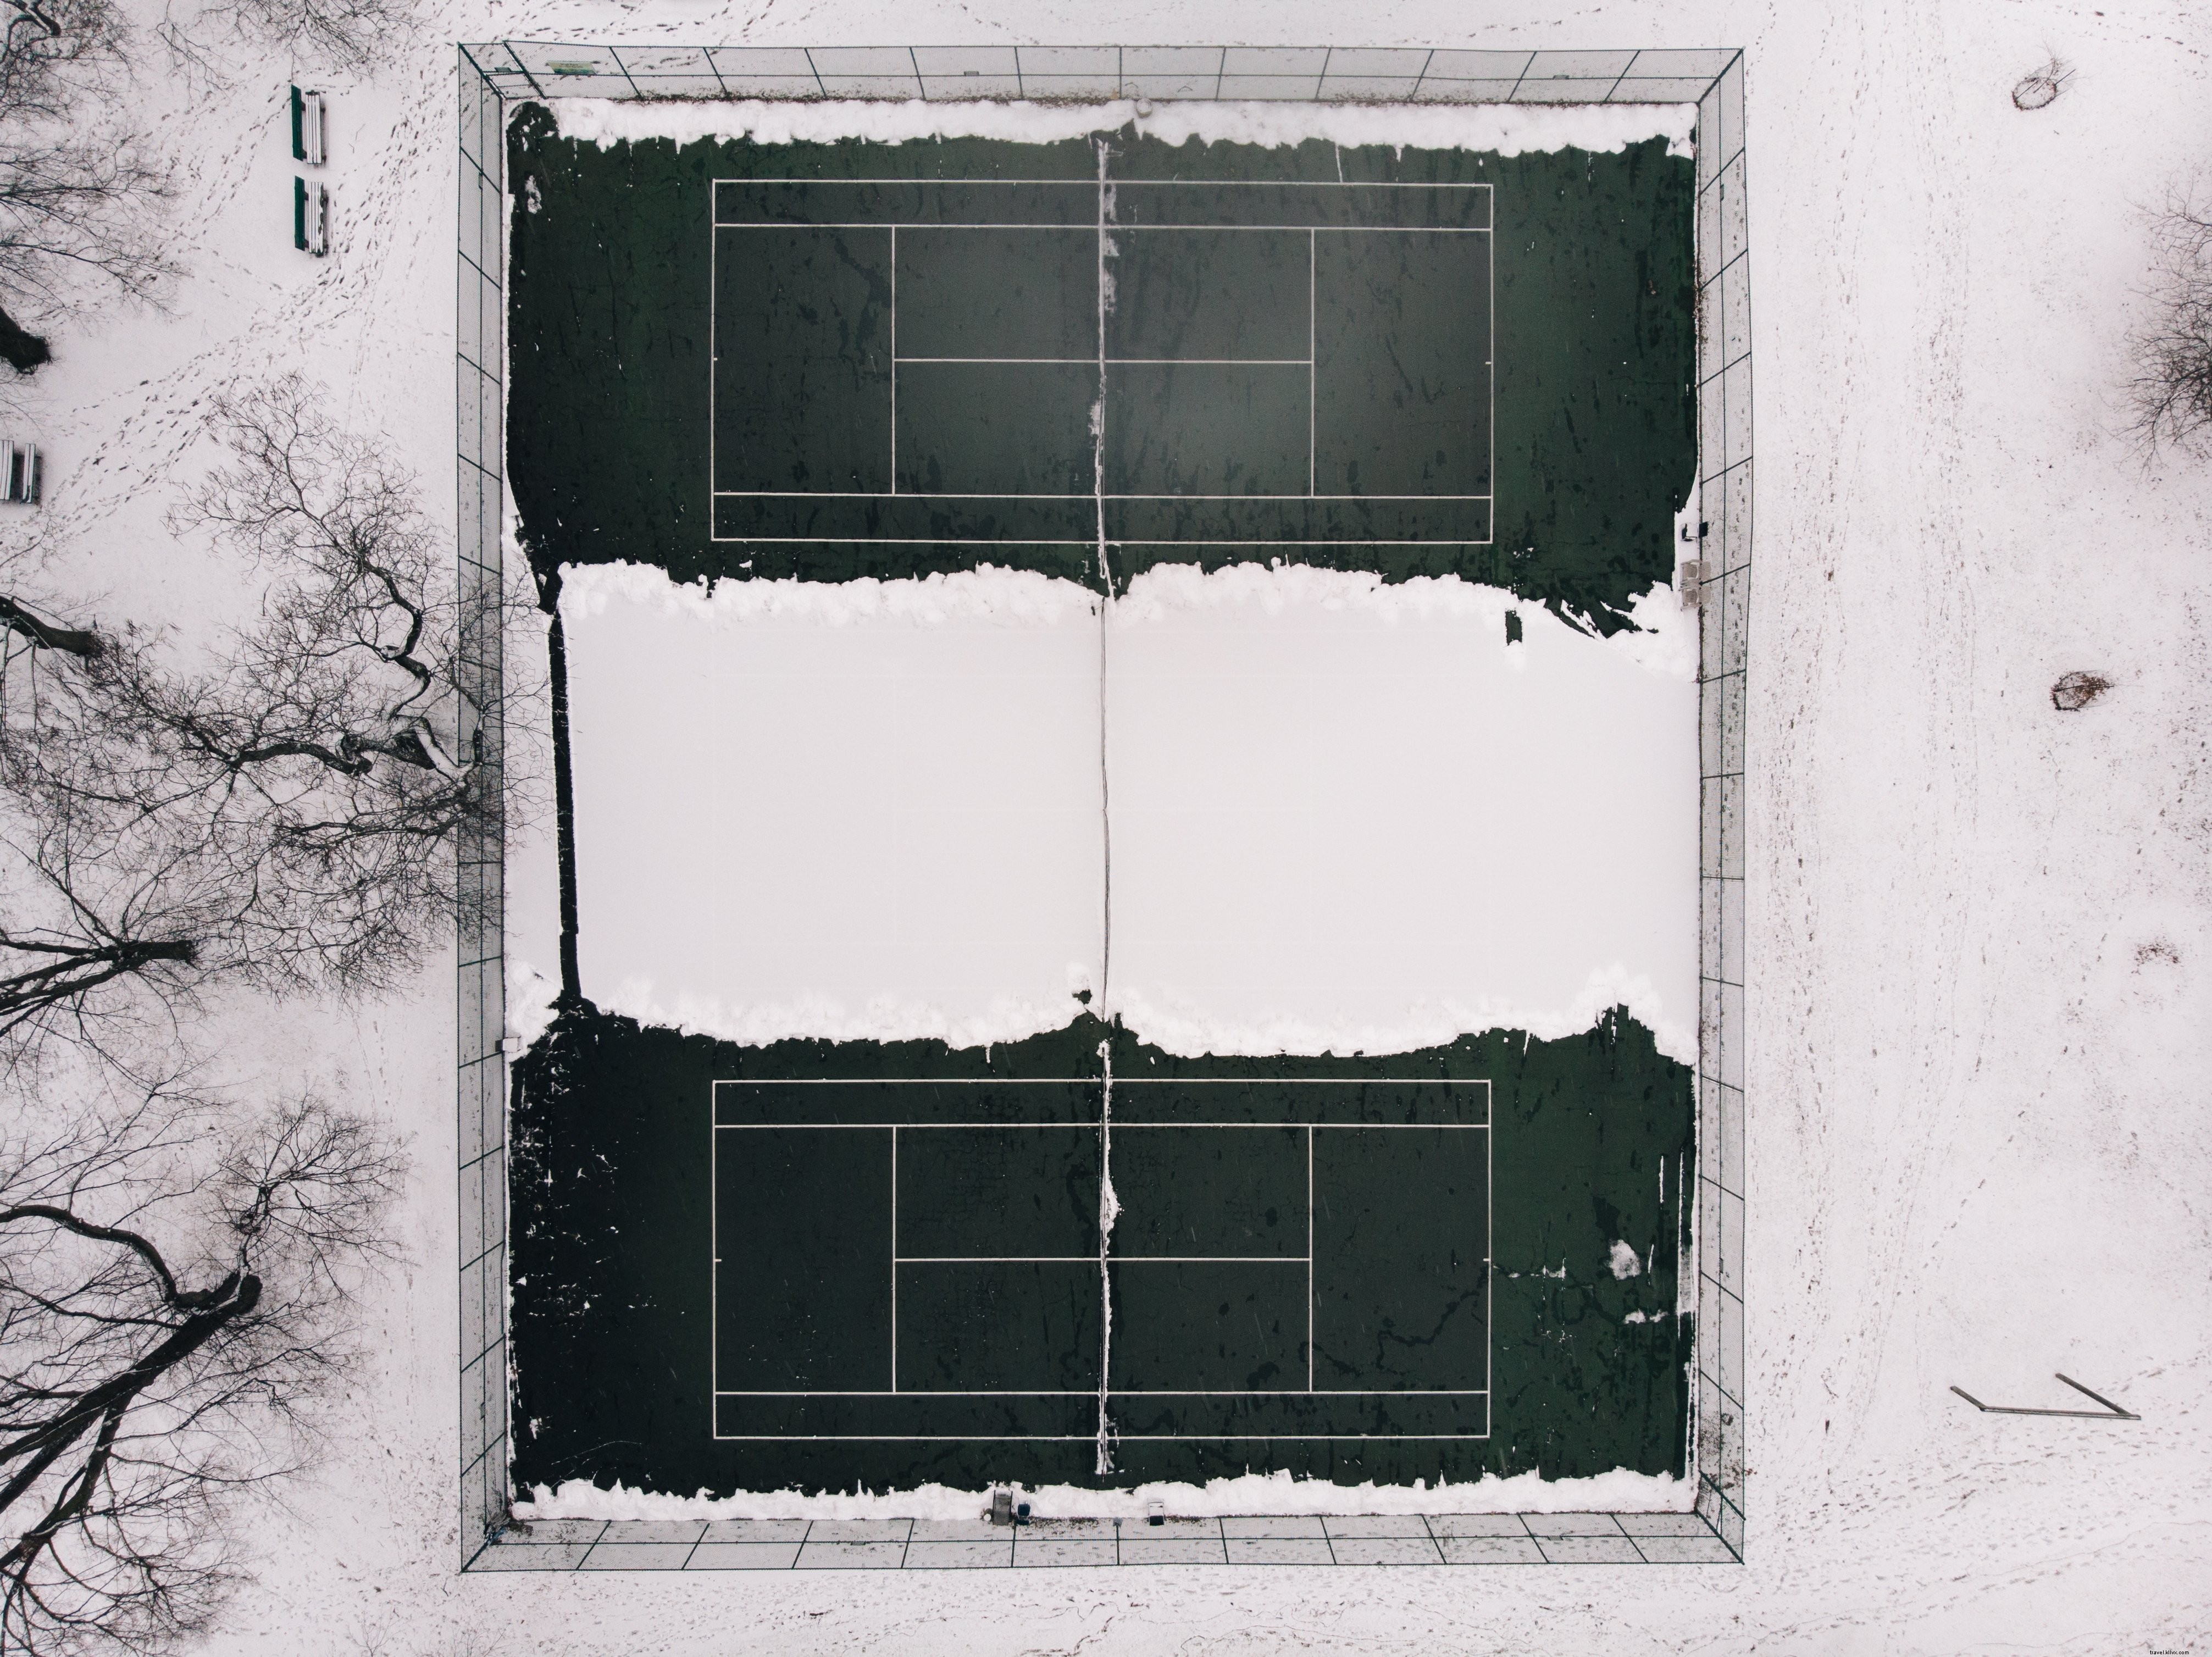 Canchas de tenis abandonadas para la temporada de invierno Foto